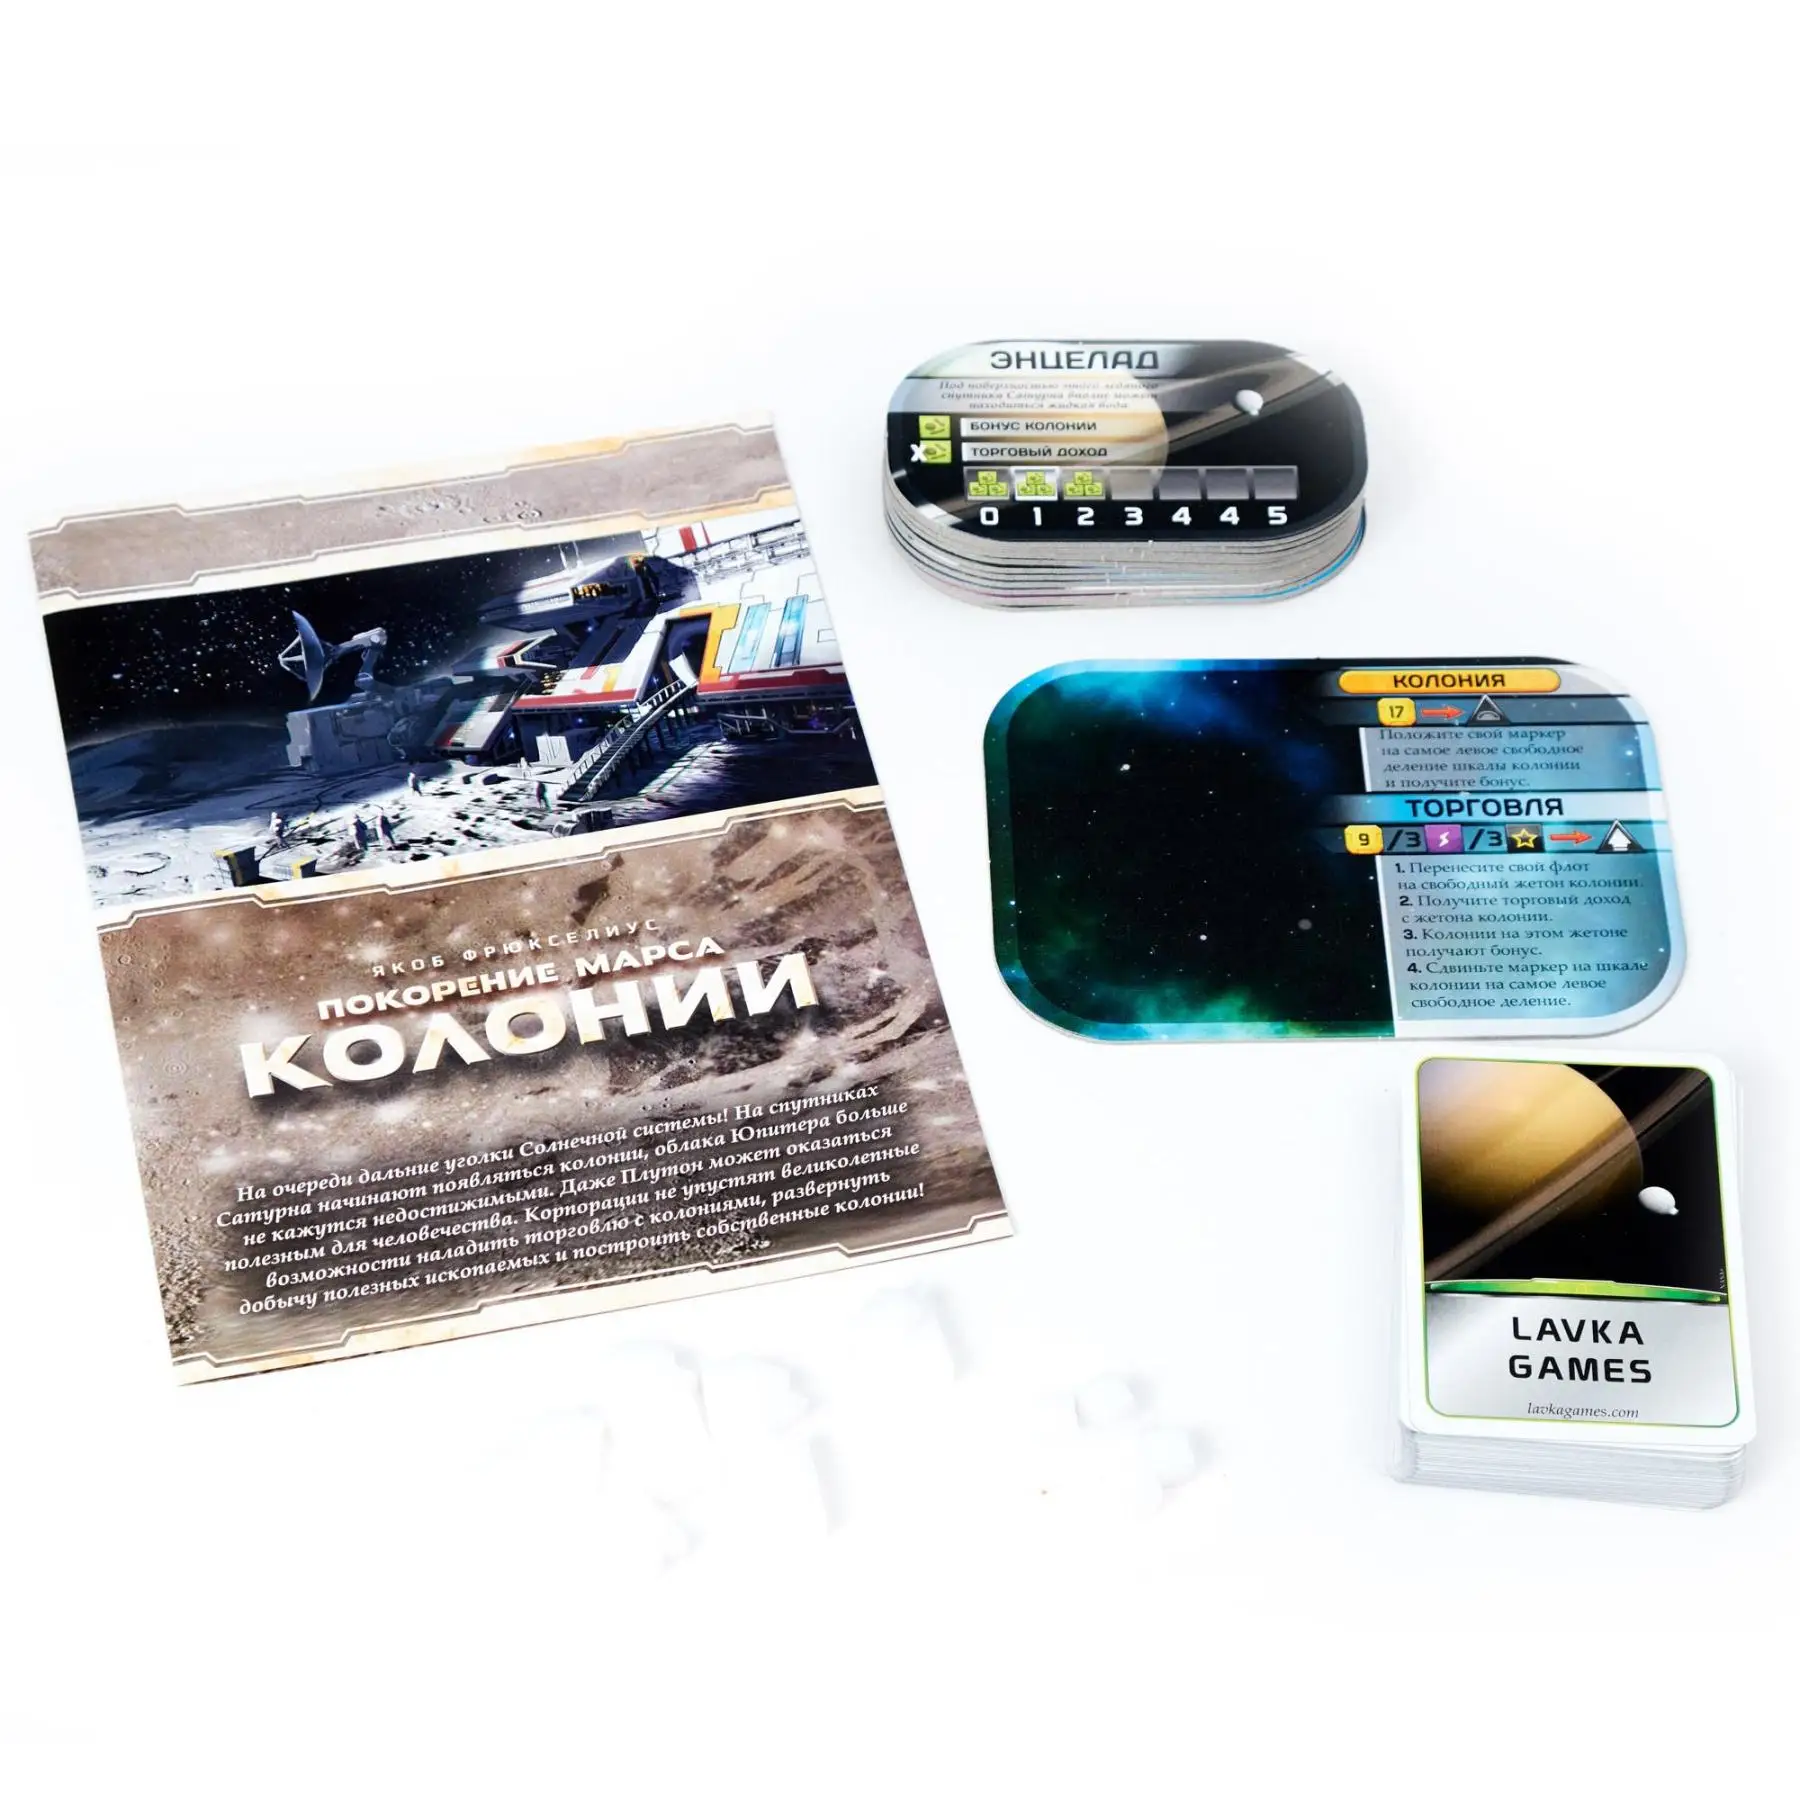 Lavka Games Настольная игра "Покорение Марса: Колонии" дополнение - купить по